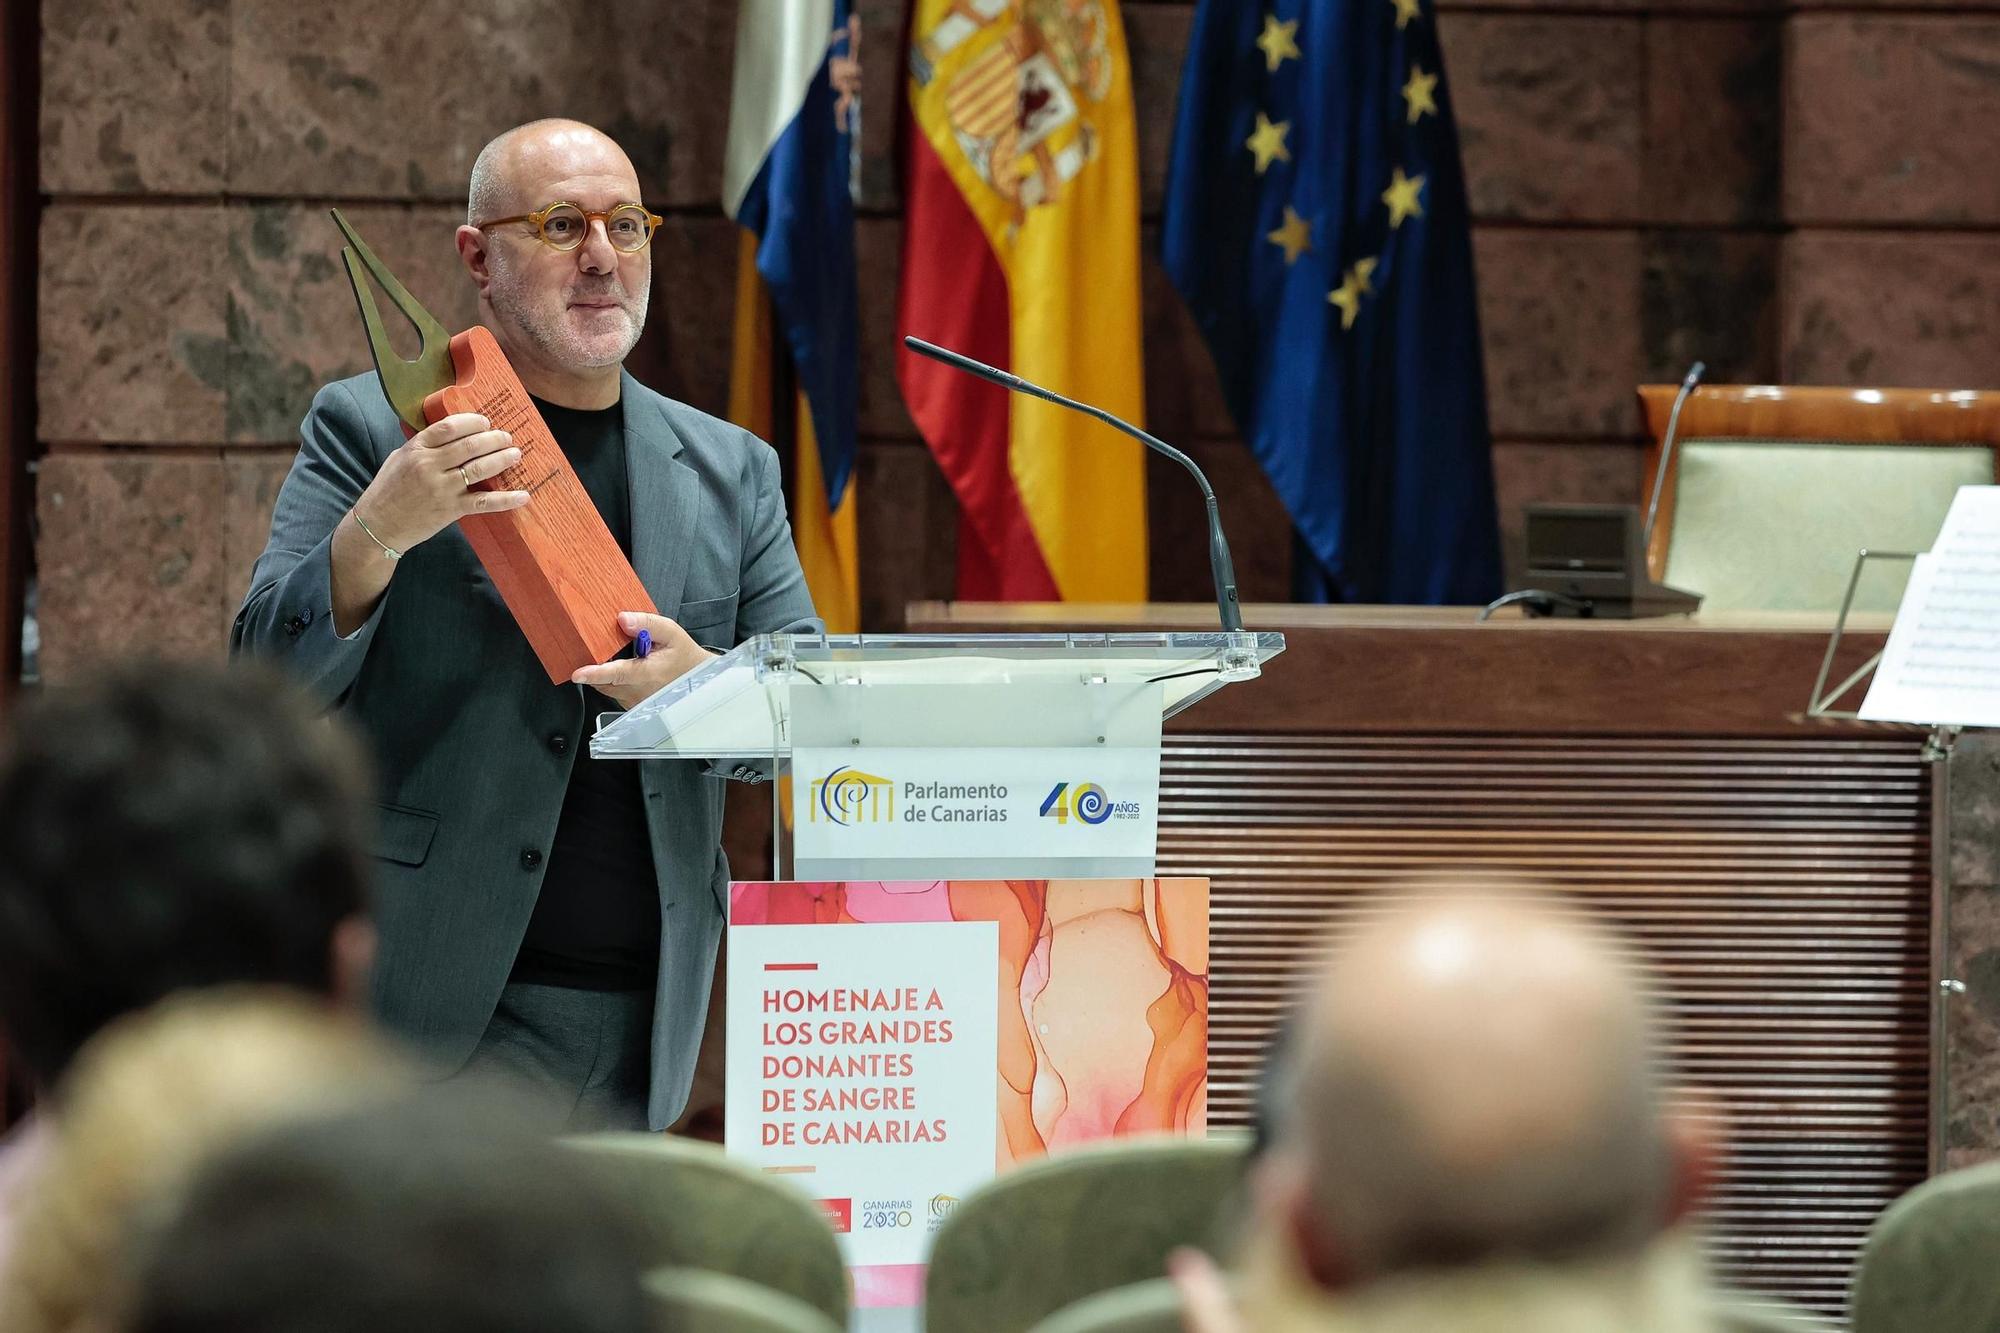 El Parlamento de Canarias rinde homenaje a los "grandes donantes" de sangre en el Archipiélago.